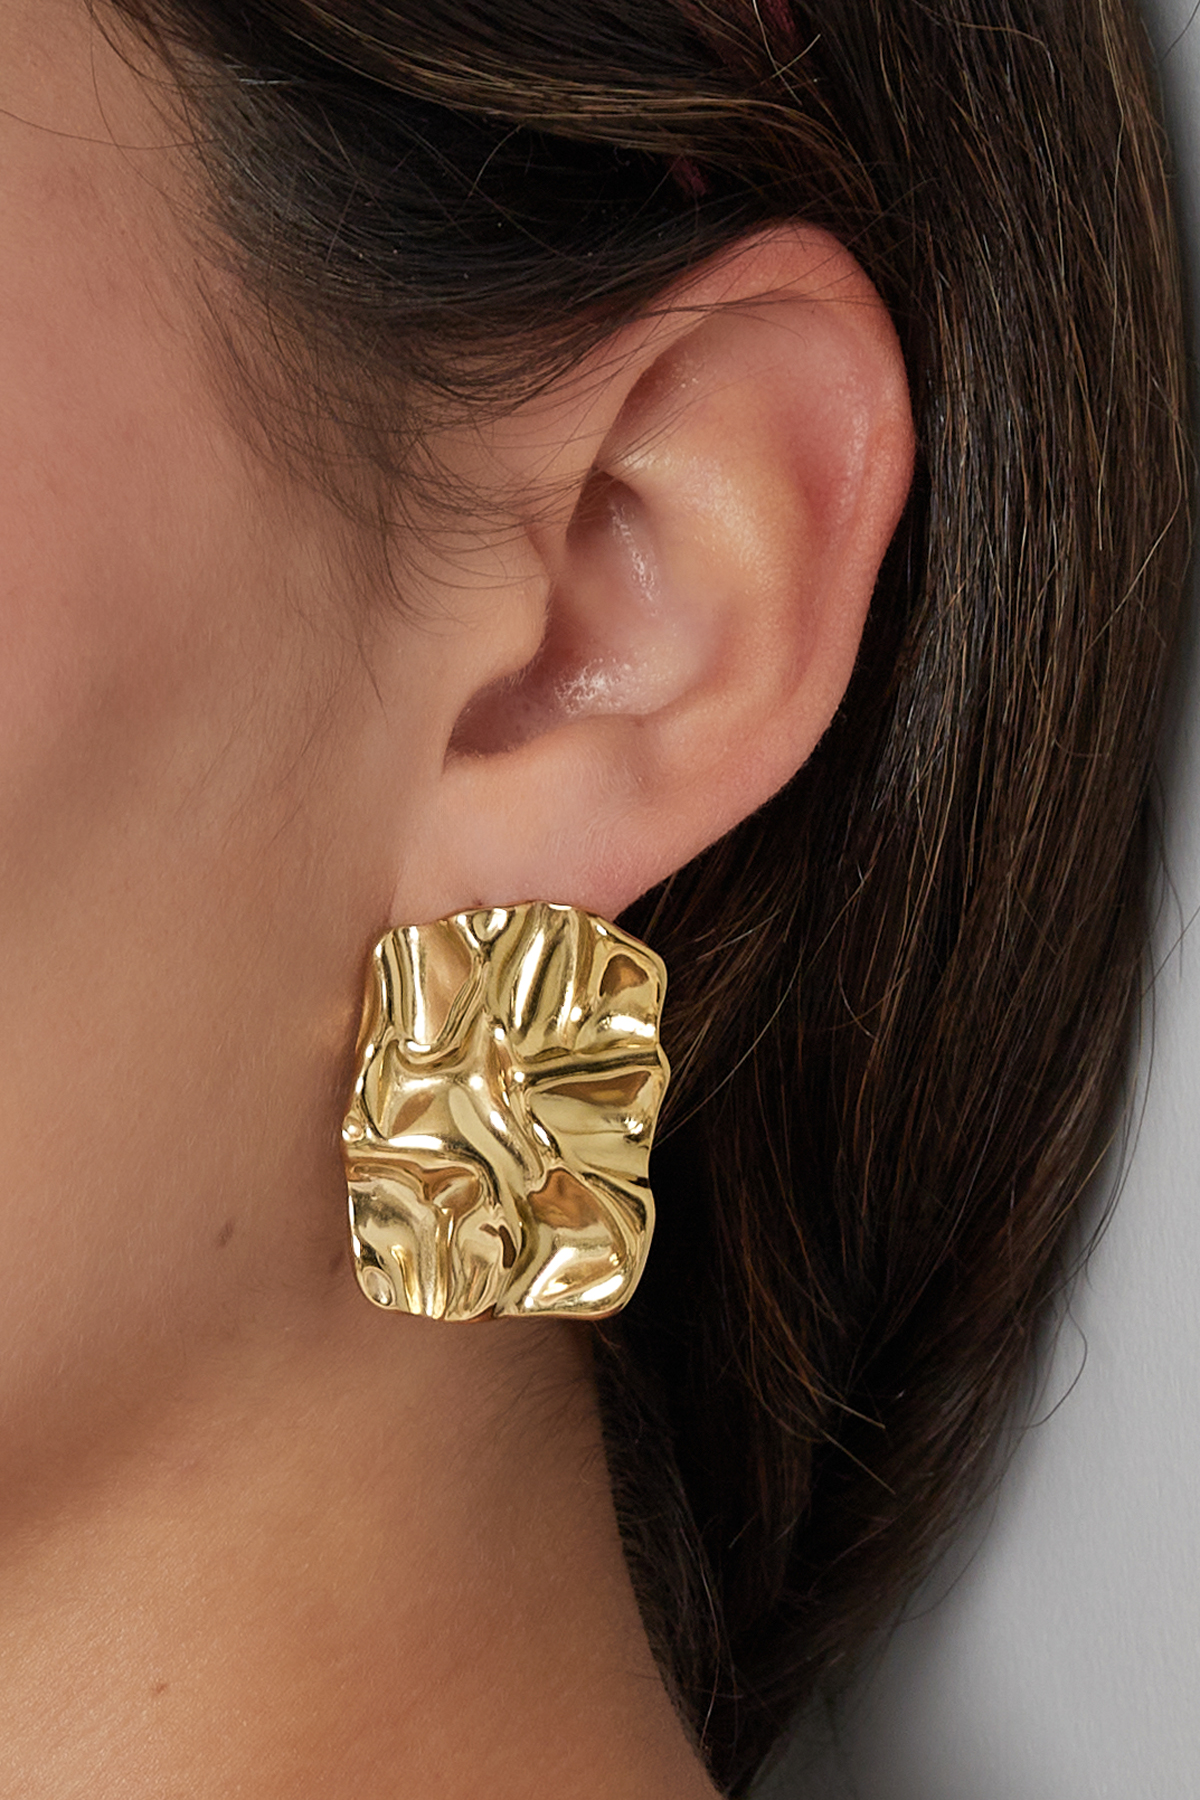 Les boucles d'oreilles doivent avoir de la grâce - or h5 Image3